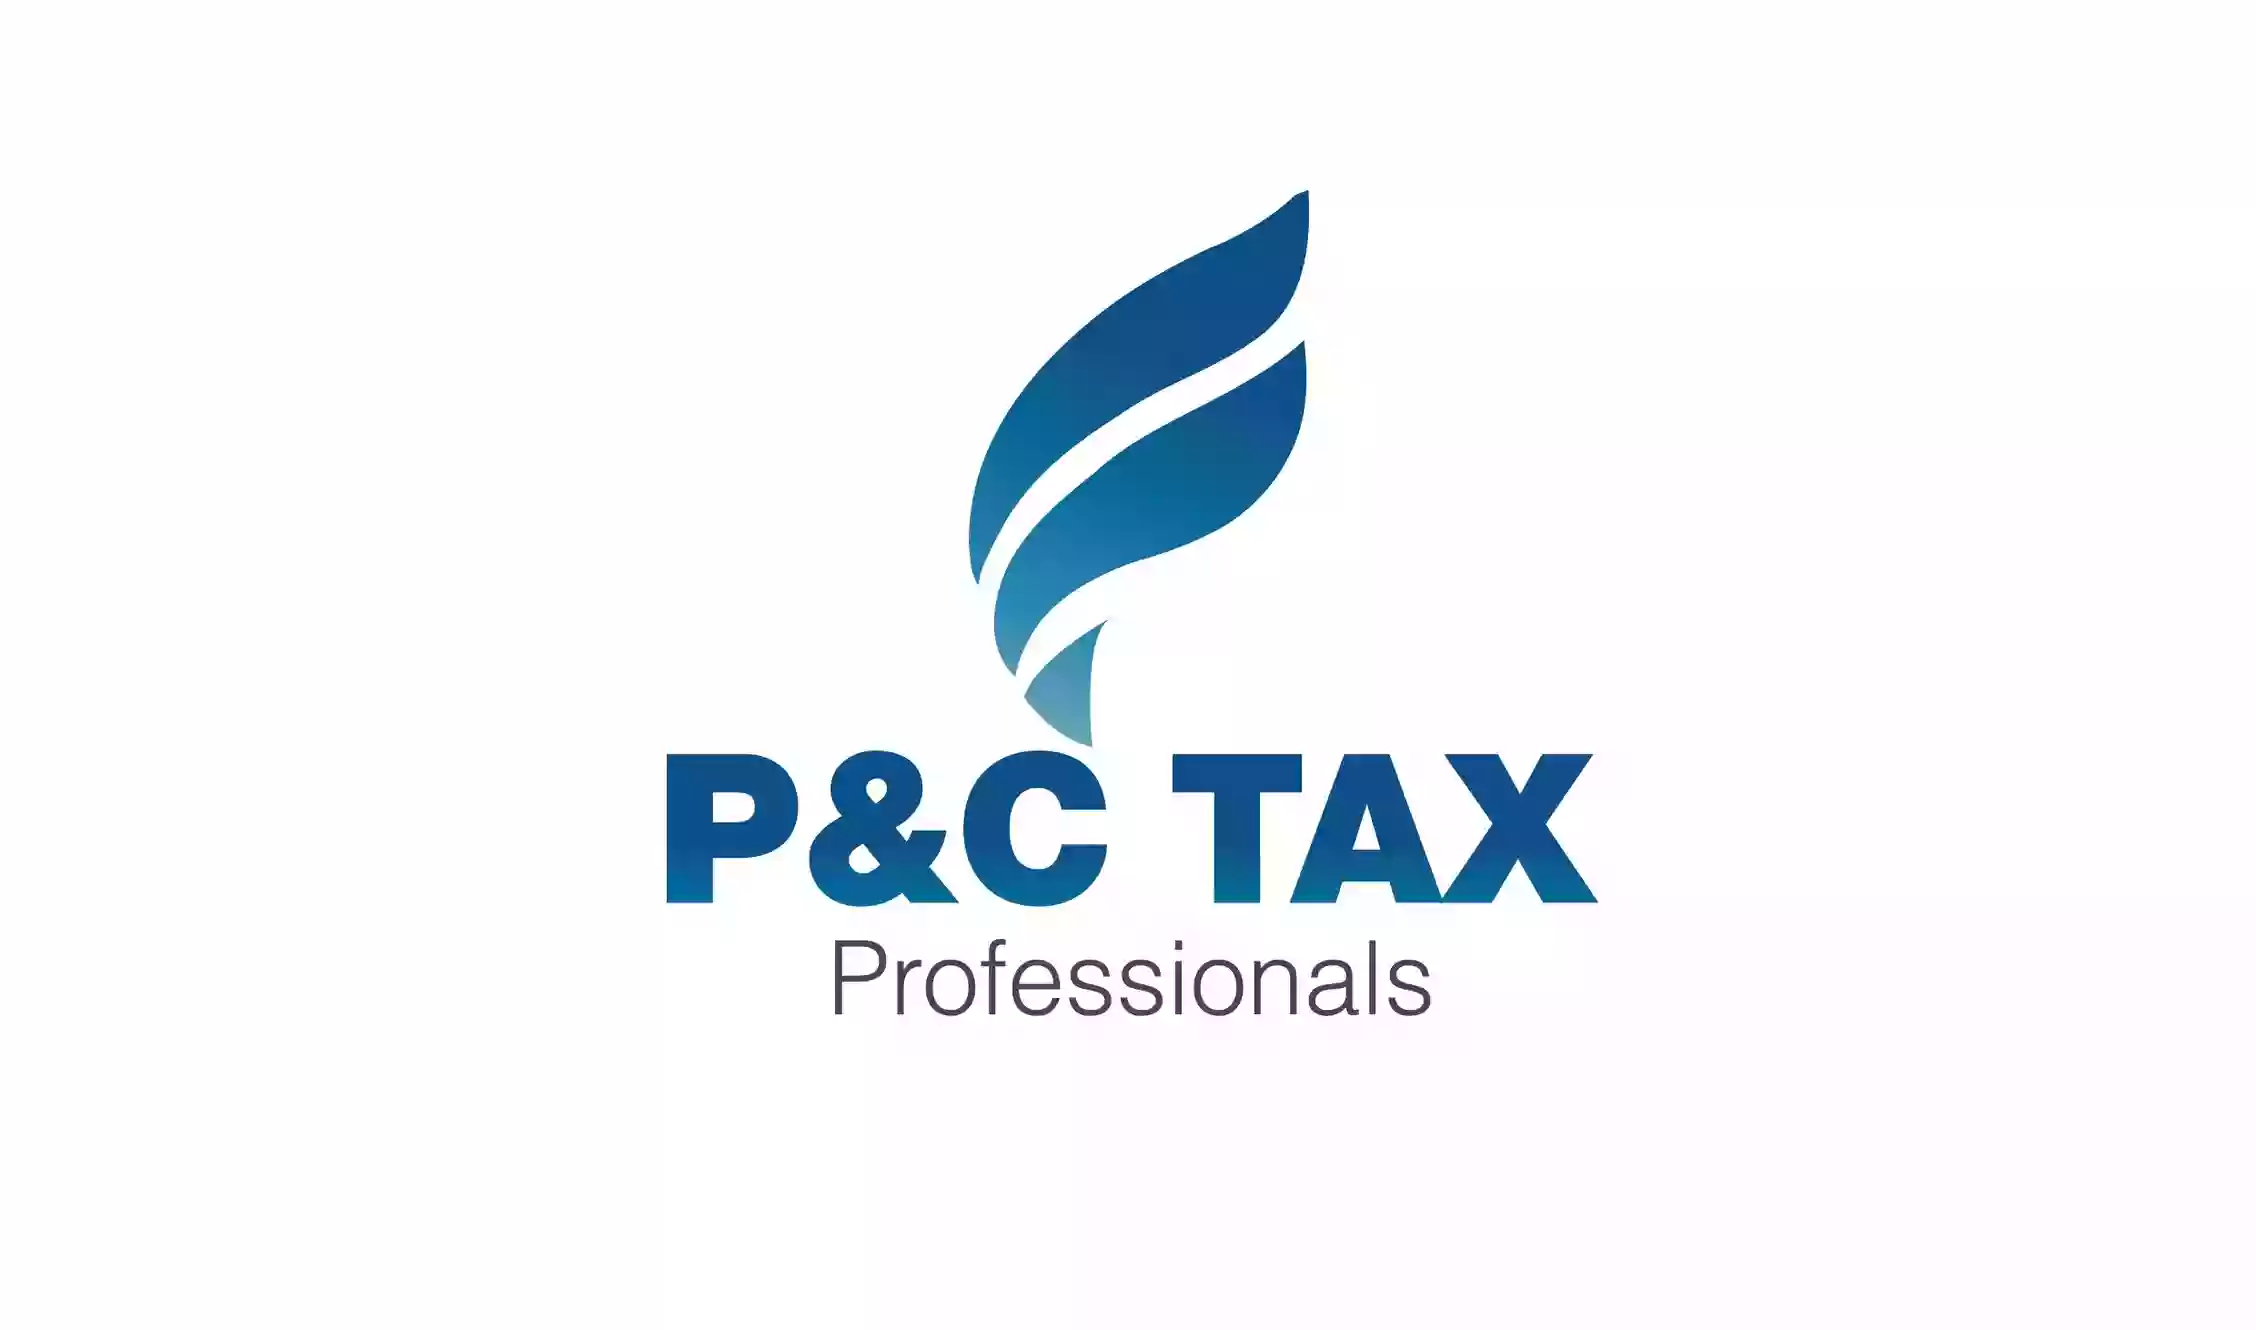 P&C Tax Professionals